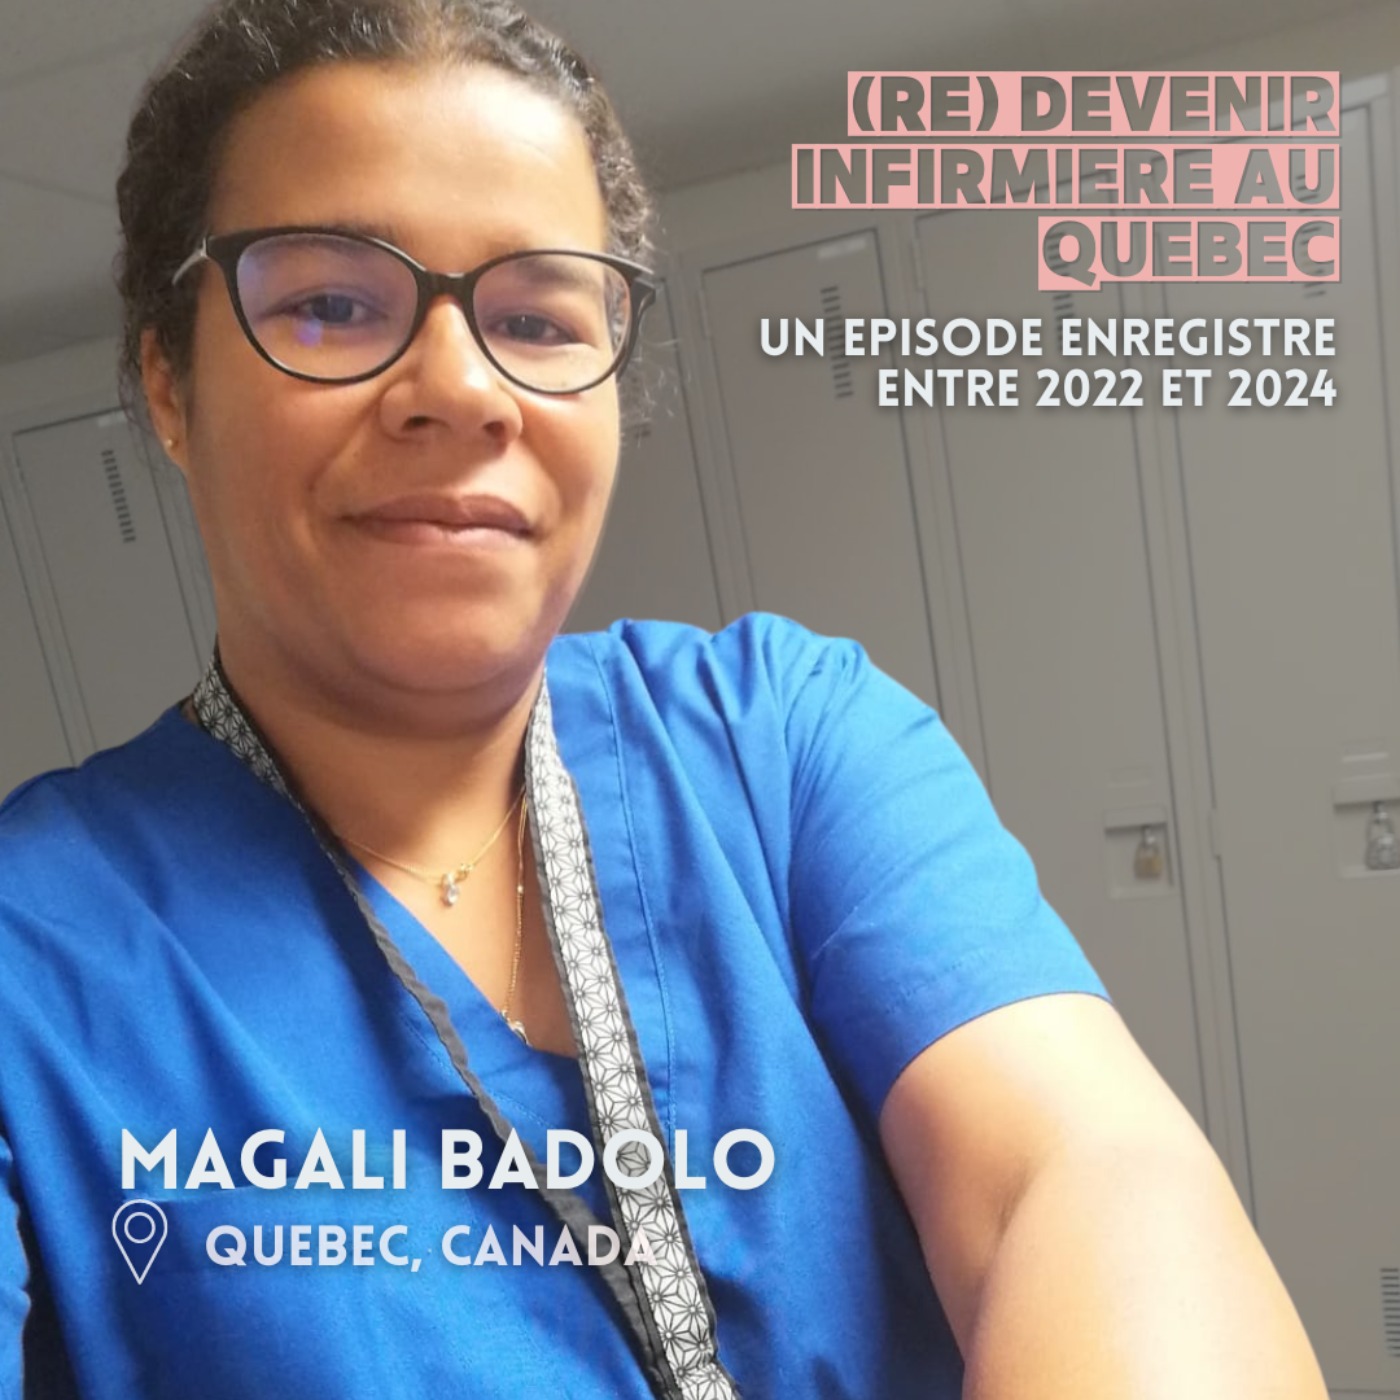 Magali Badolo (Quebec) : (re) devenir infirmière au Canada (2/2)